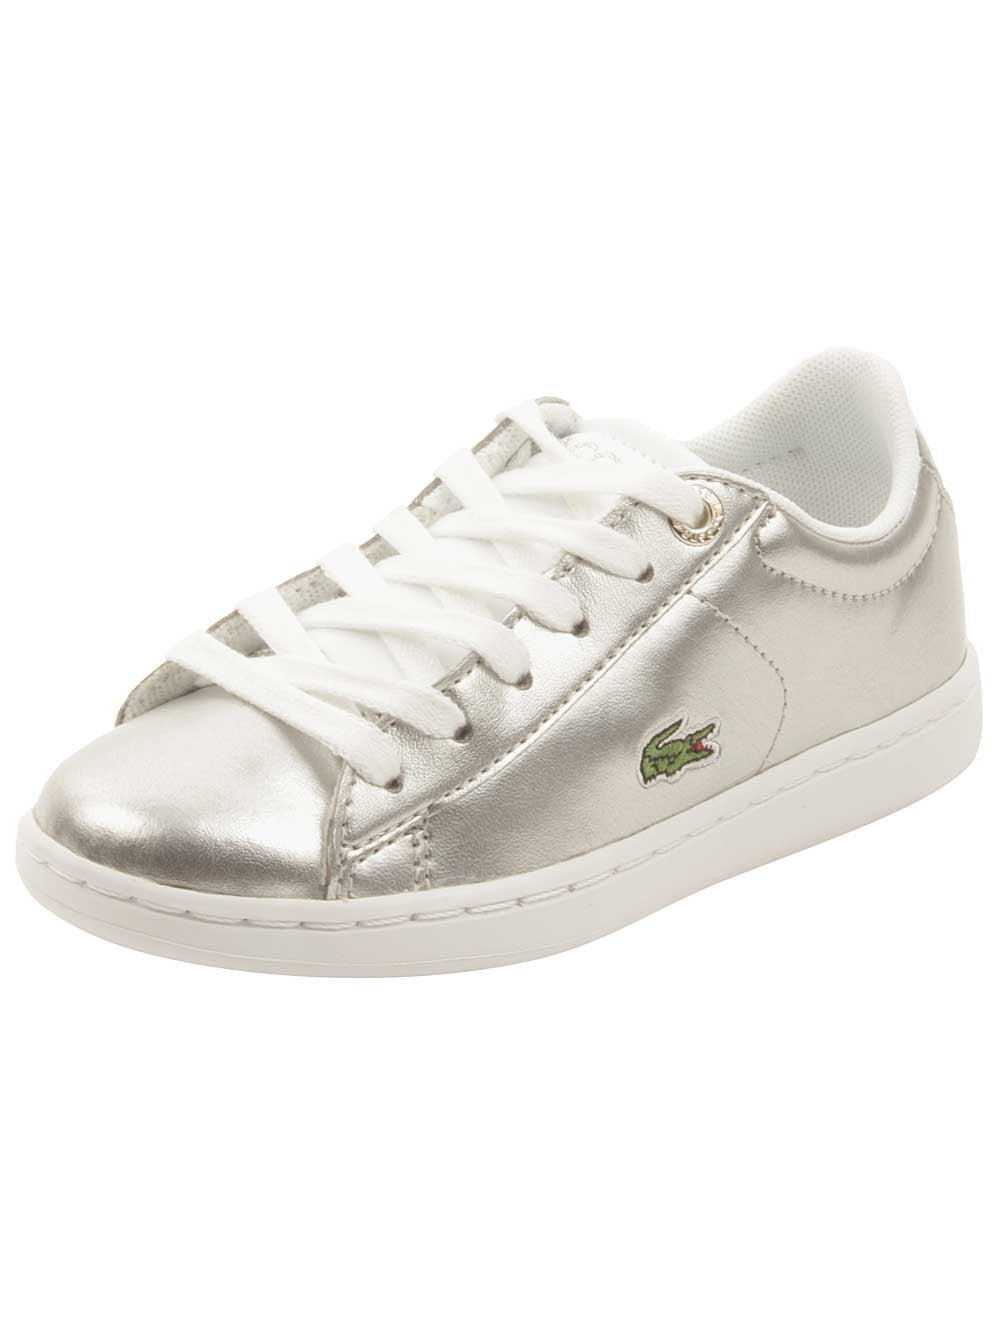 Lacoste Kids Carnaby Evo Sneaker 736SPC0002-PINK/WHITE 